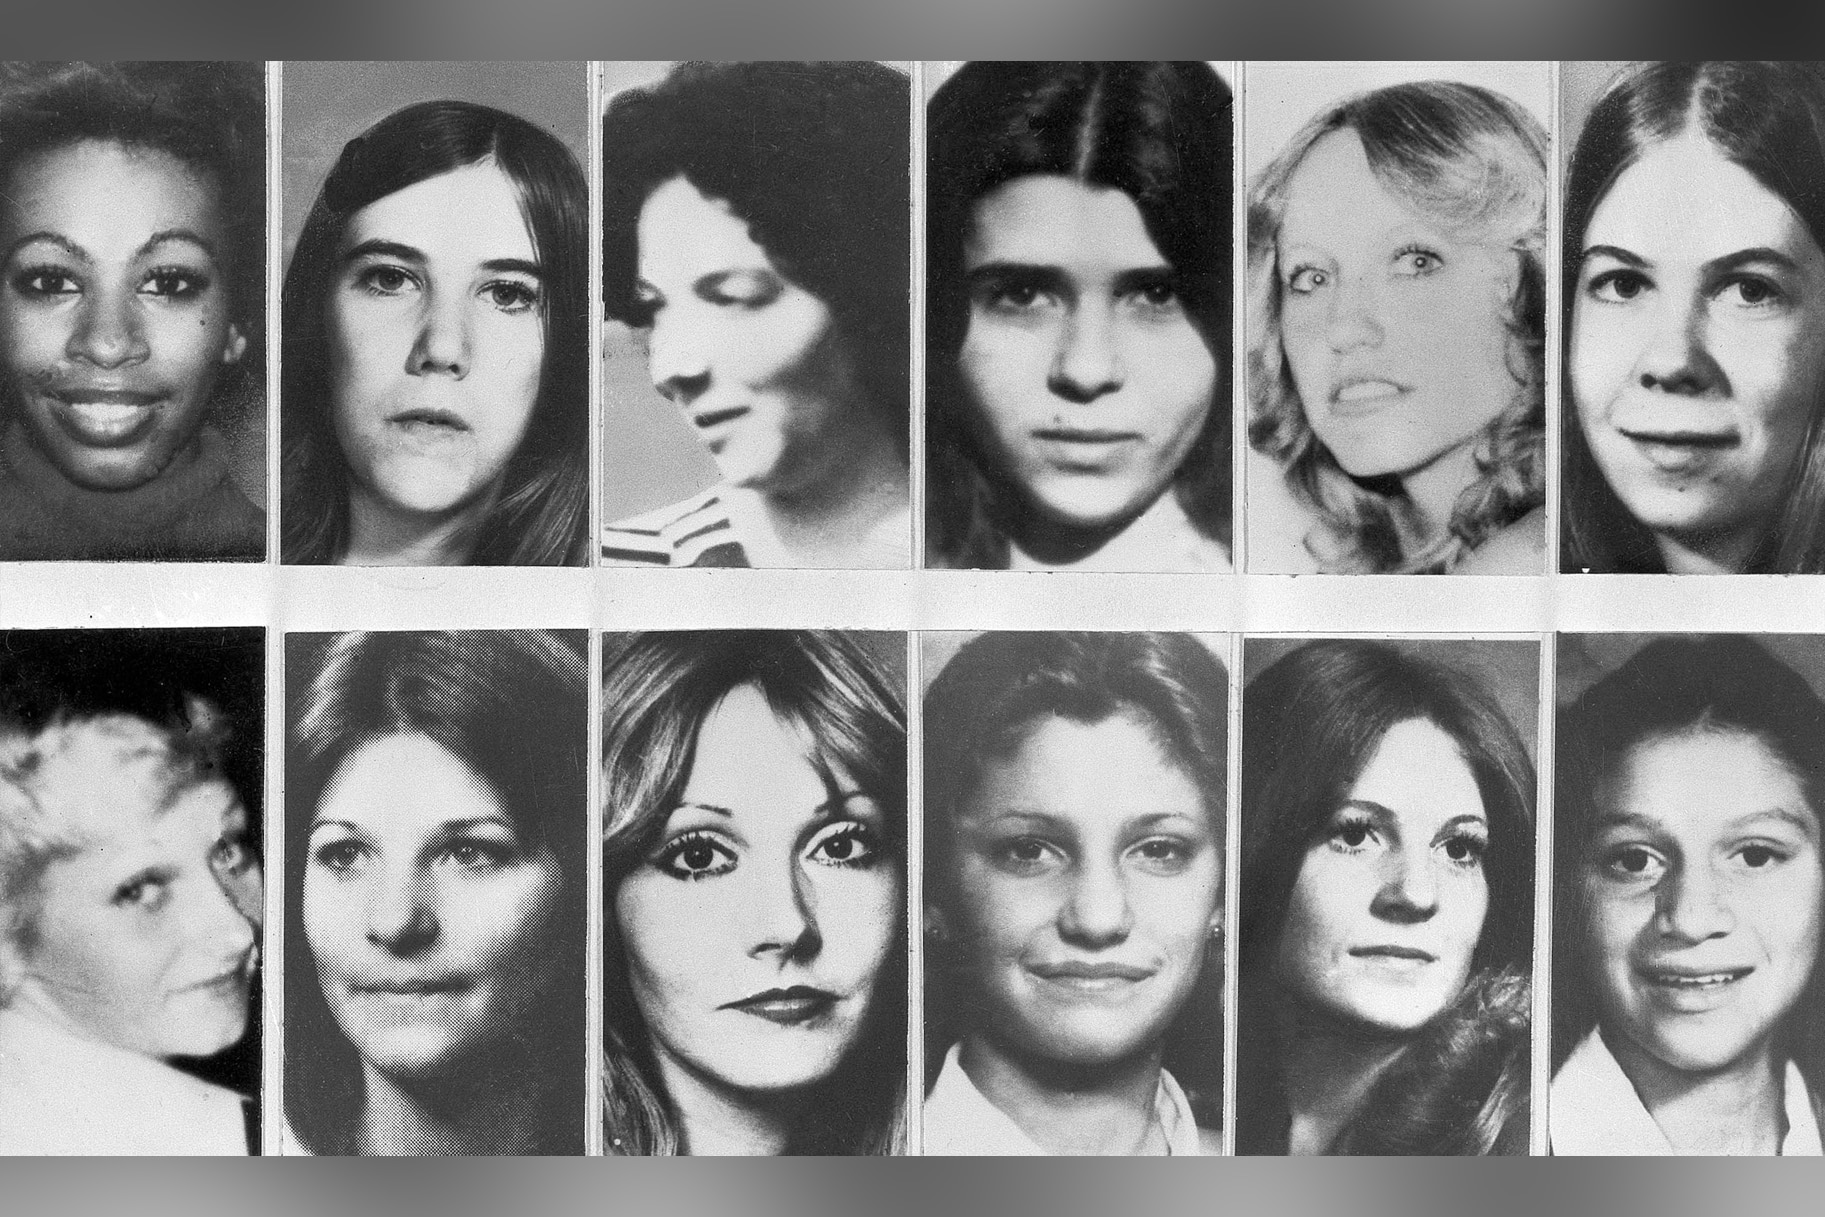 Victims of the so-called Hillside Strangler